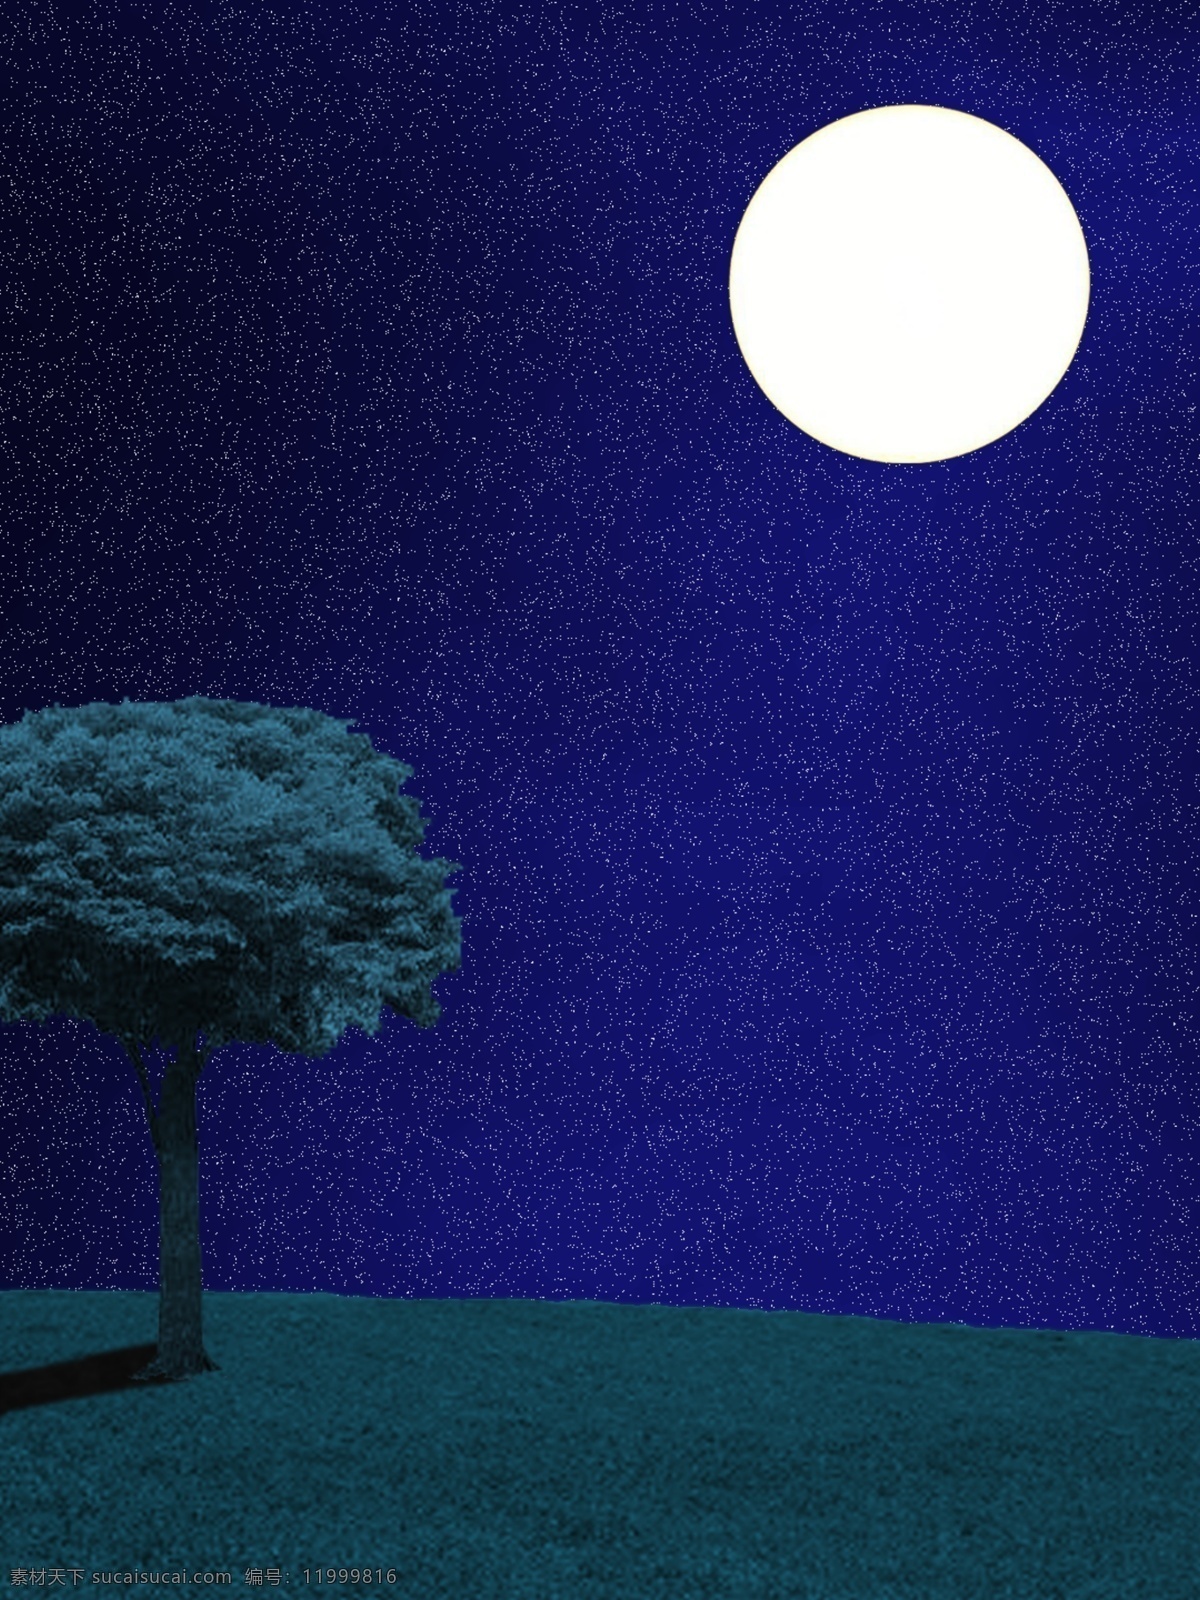 月夜星空 夜空 月亮 晚上 夜晚 ps 分层 星空 树 草坪 草地 背景 月夜 月光 月 星星 自然景观 自然风光